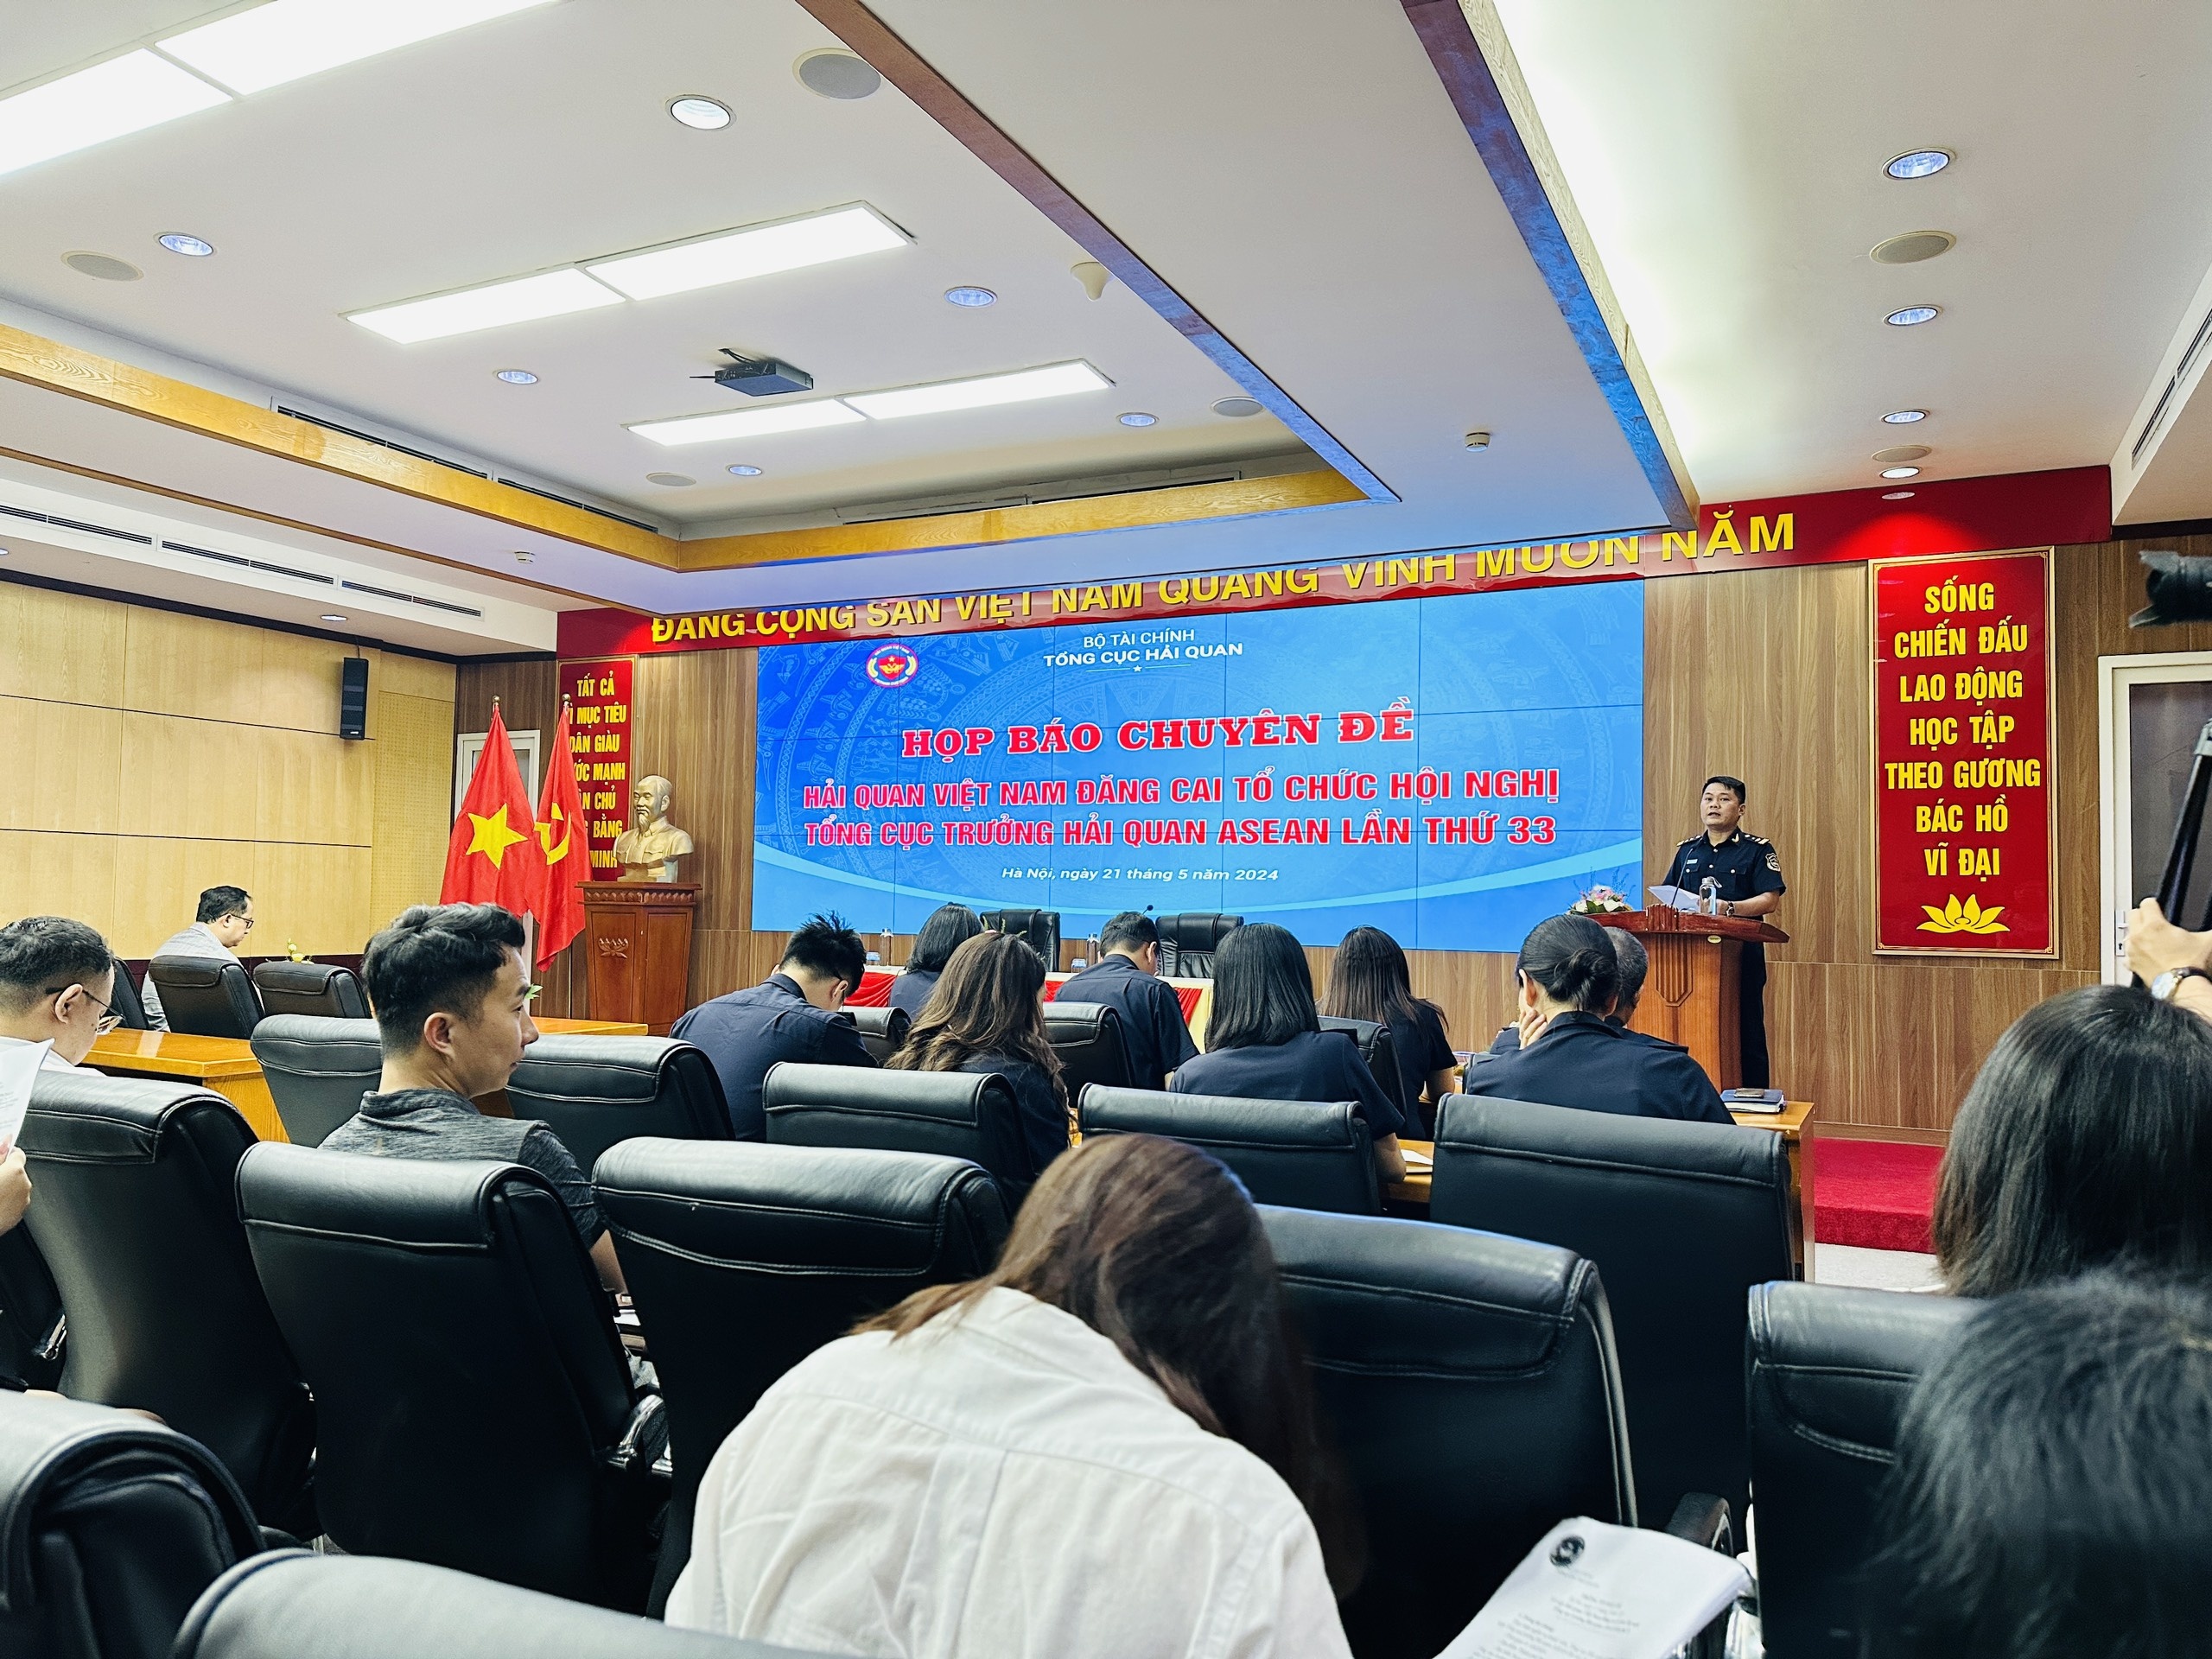 Việt Nam lần thứ 4 đăng cai tổ chức Hội nghị Tổng cục trưởng Hải quan ASEAN